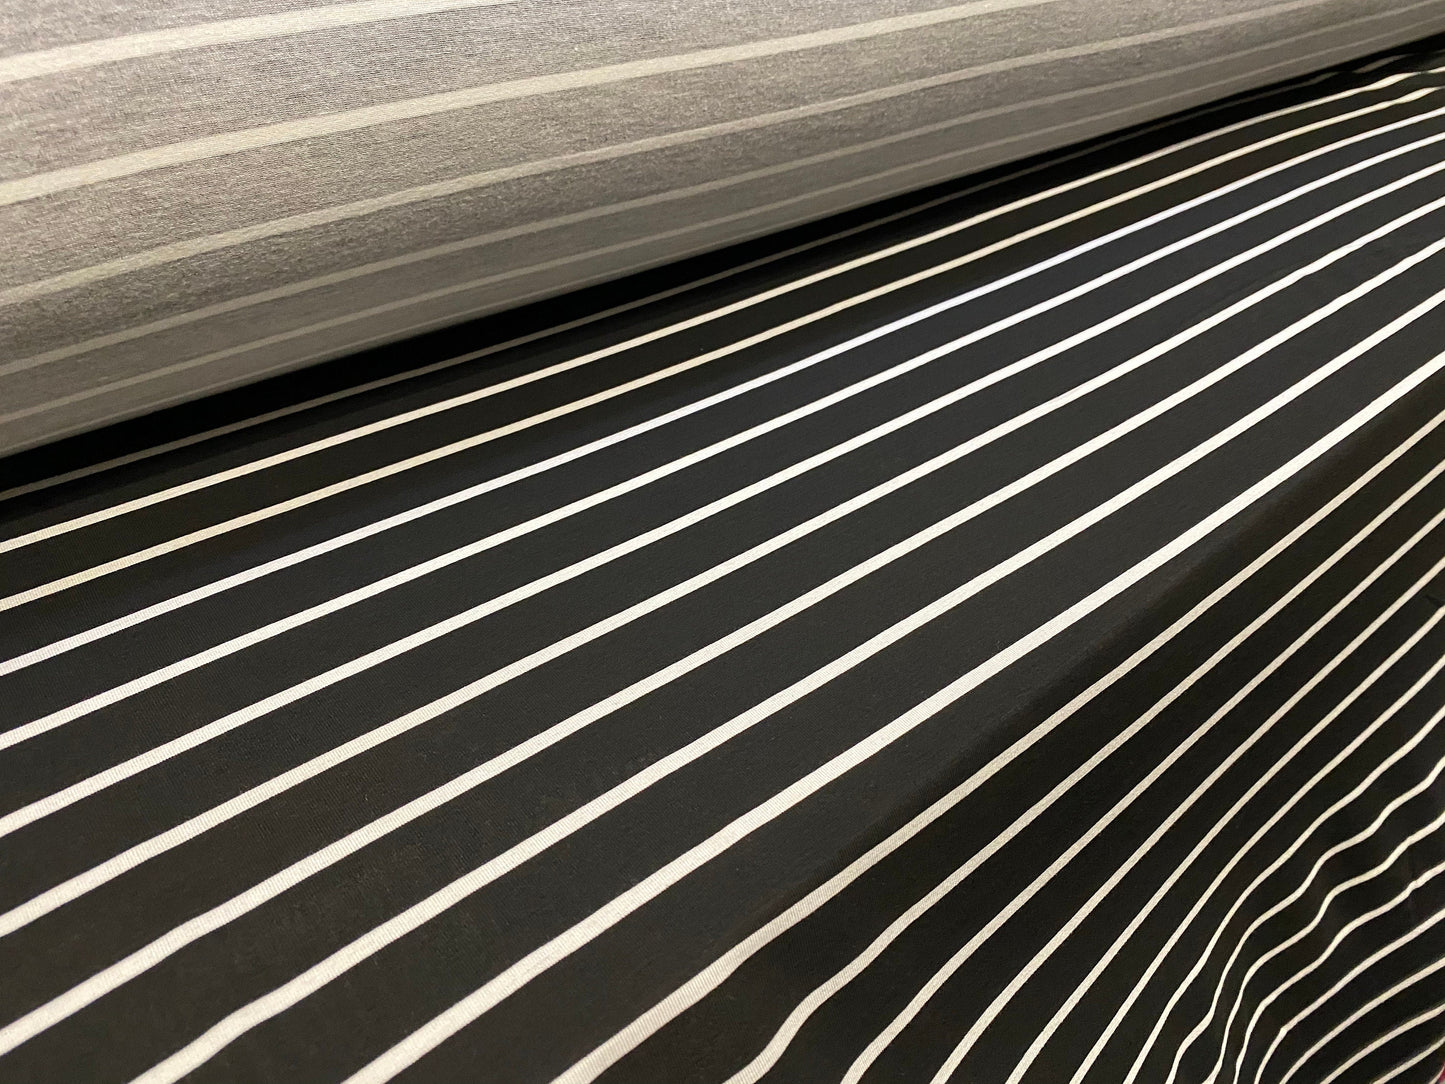 Viscose spandex stretch jersey fabric, per metre - black & white printed stripe